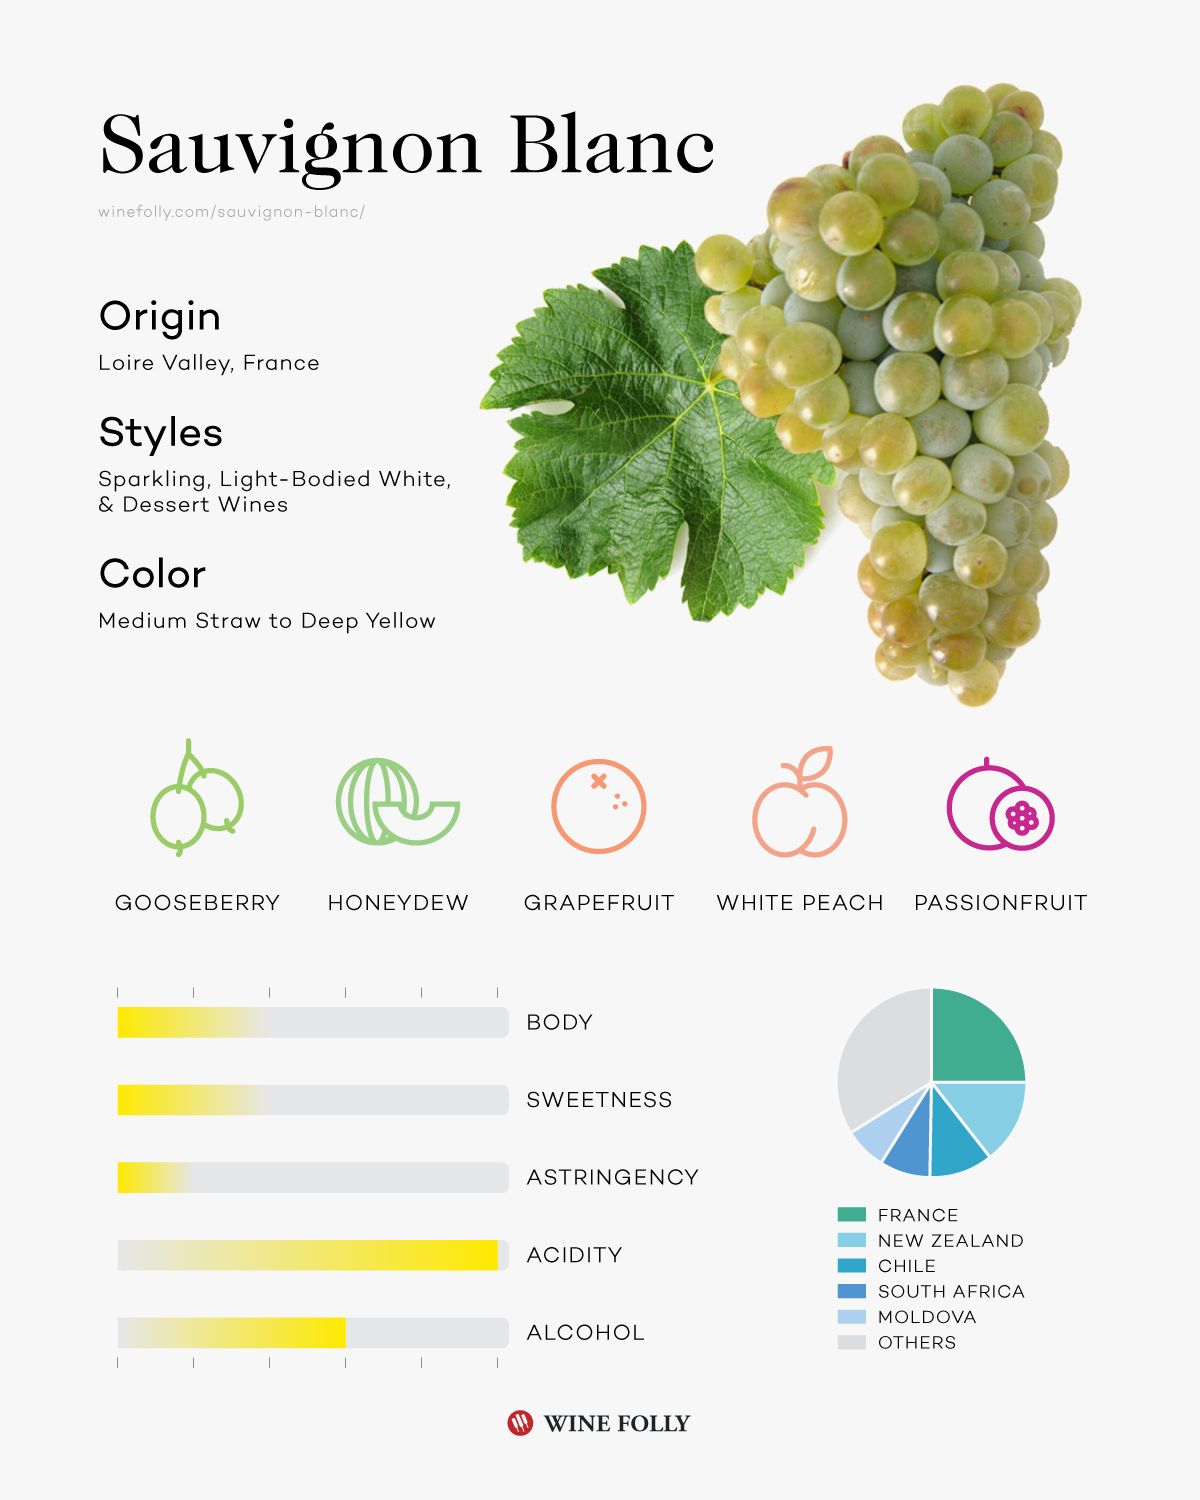 Sauvignon Blanc vinsmagsprofil infografisk af Wine Folly 2019